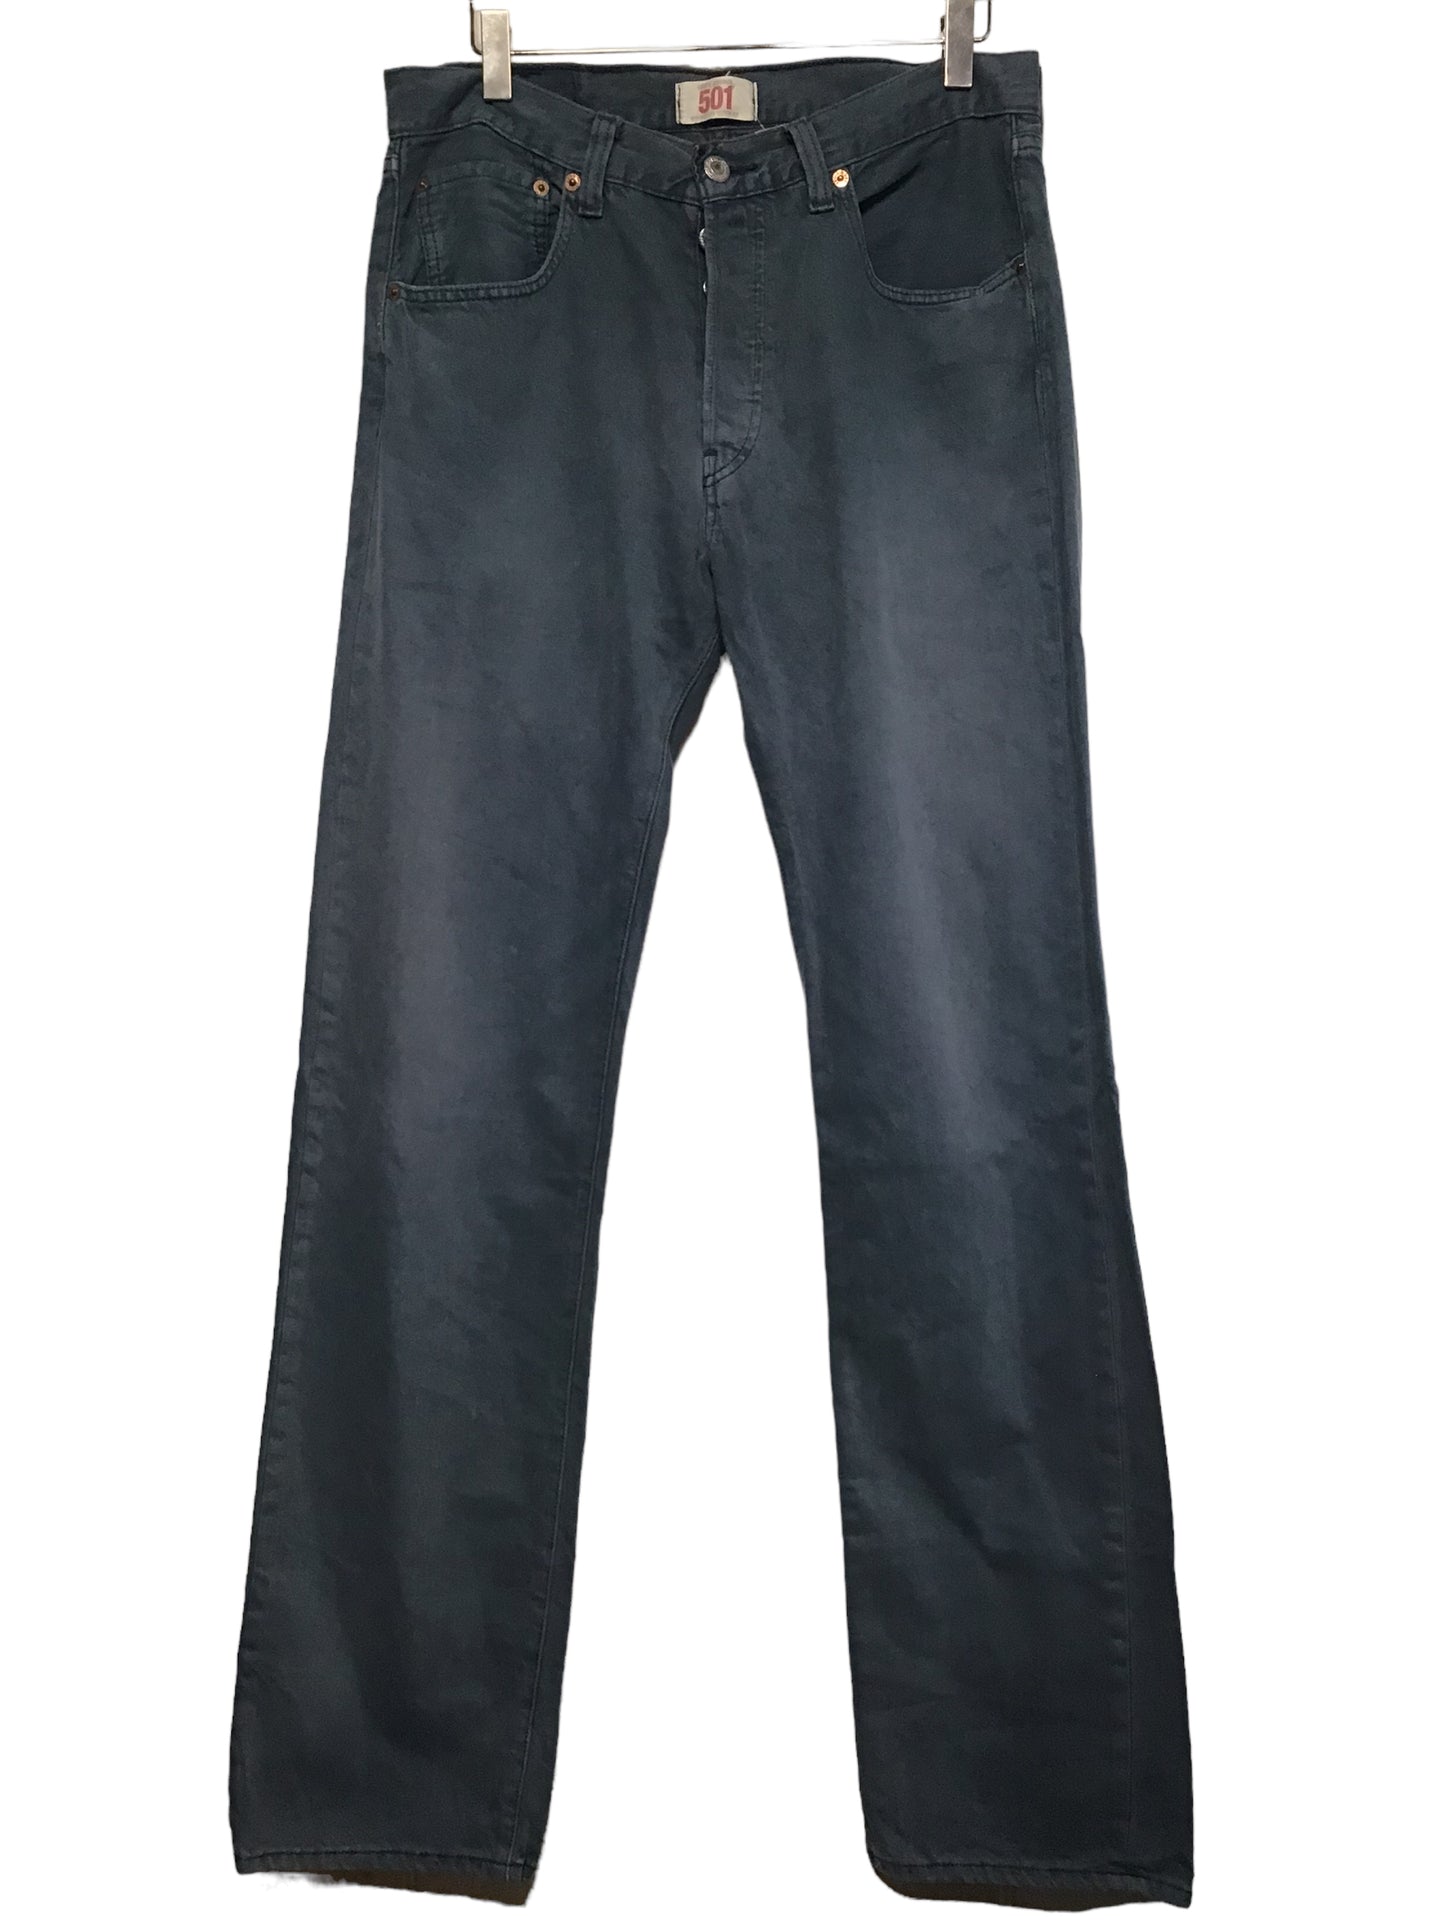 Levi 501 Jeans (32x34)